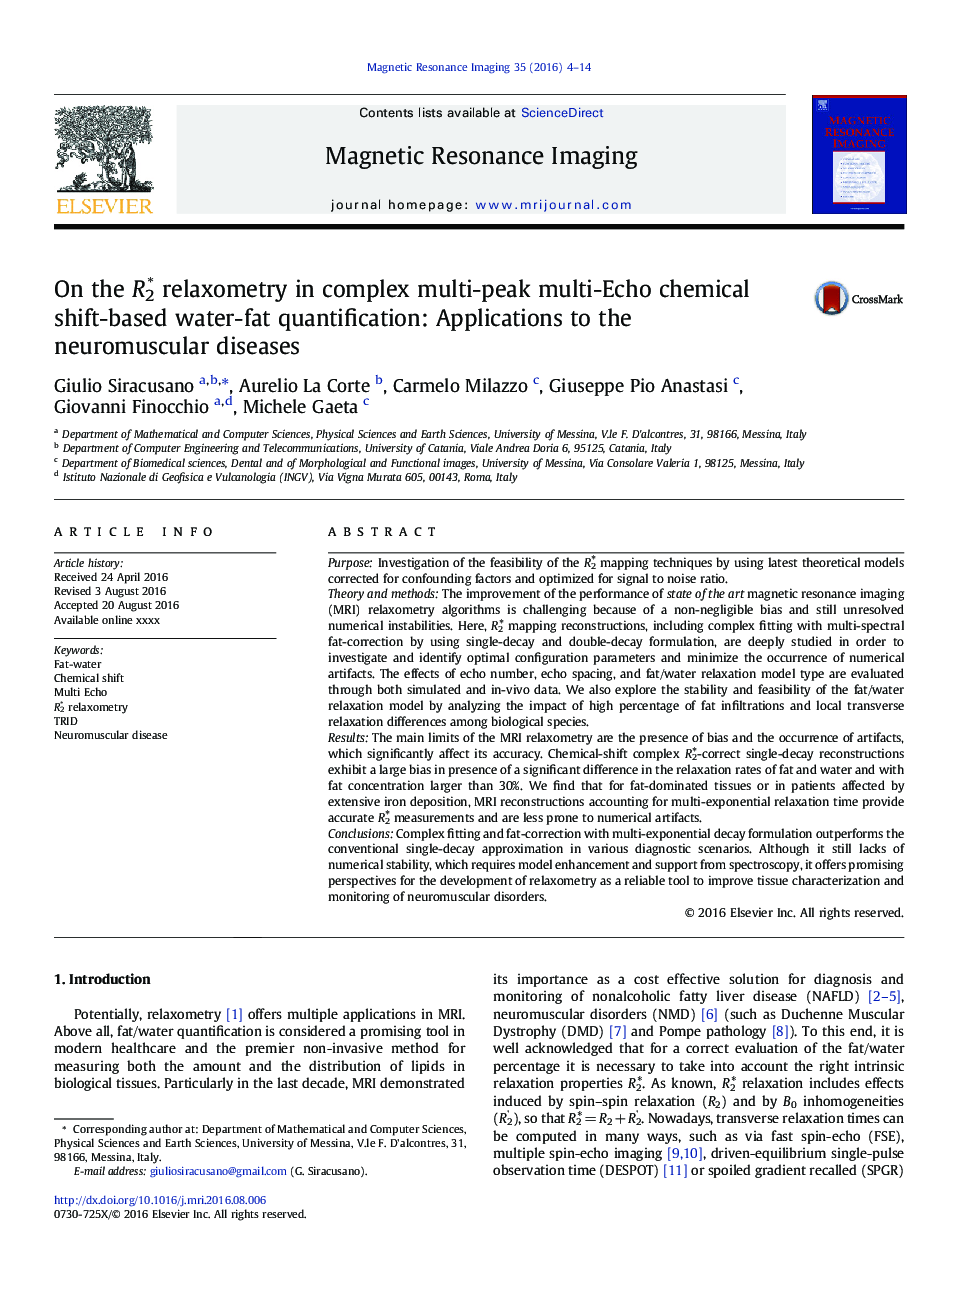 On the R2â relaxometry in complex multi-peak multi-Echo chemical shift-based water-fat quantification: Applications to the neuromuscular diseases